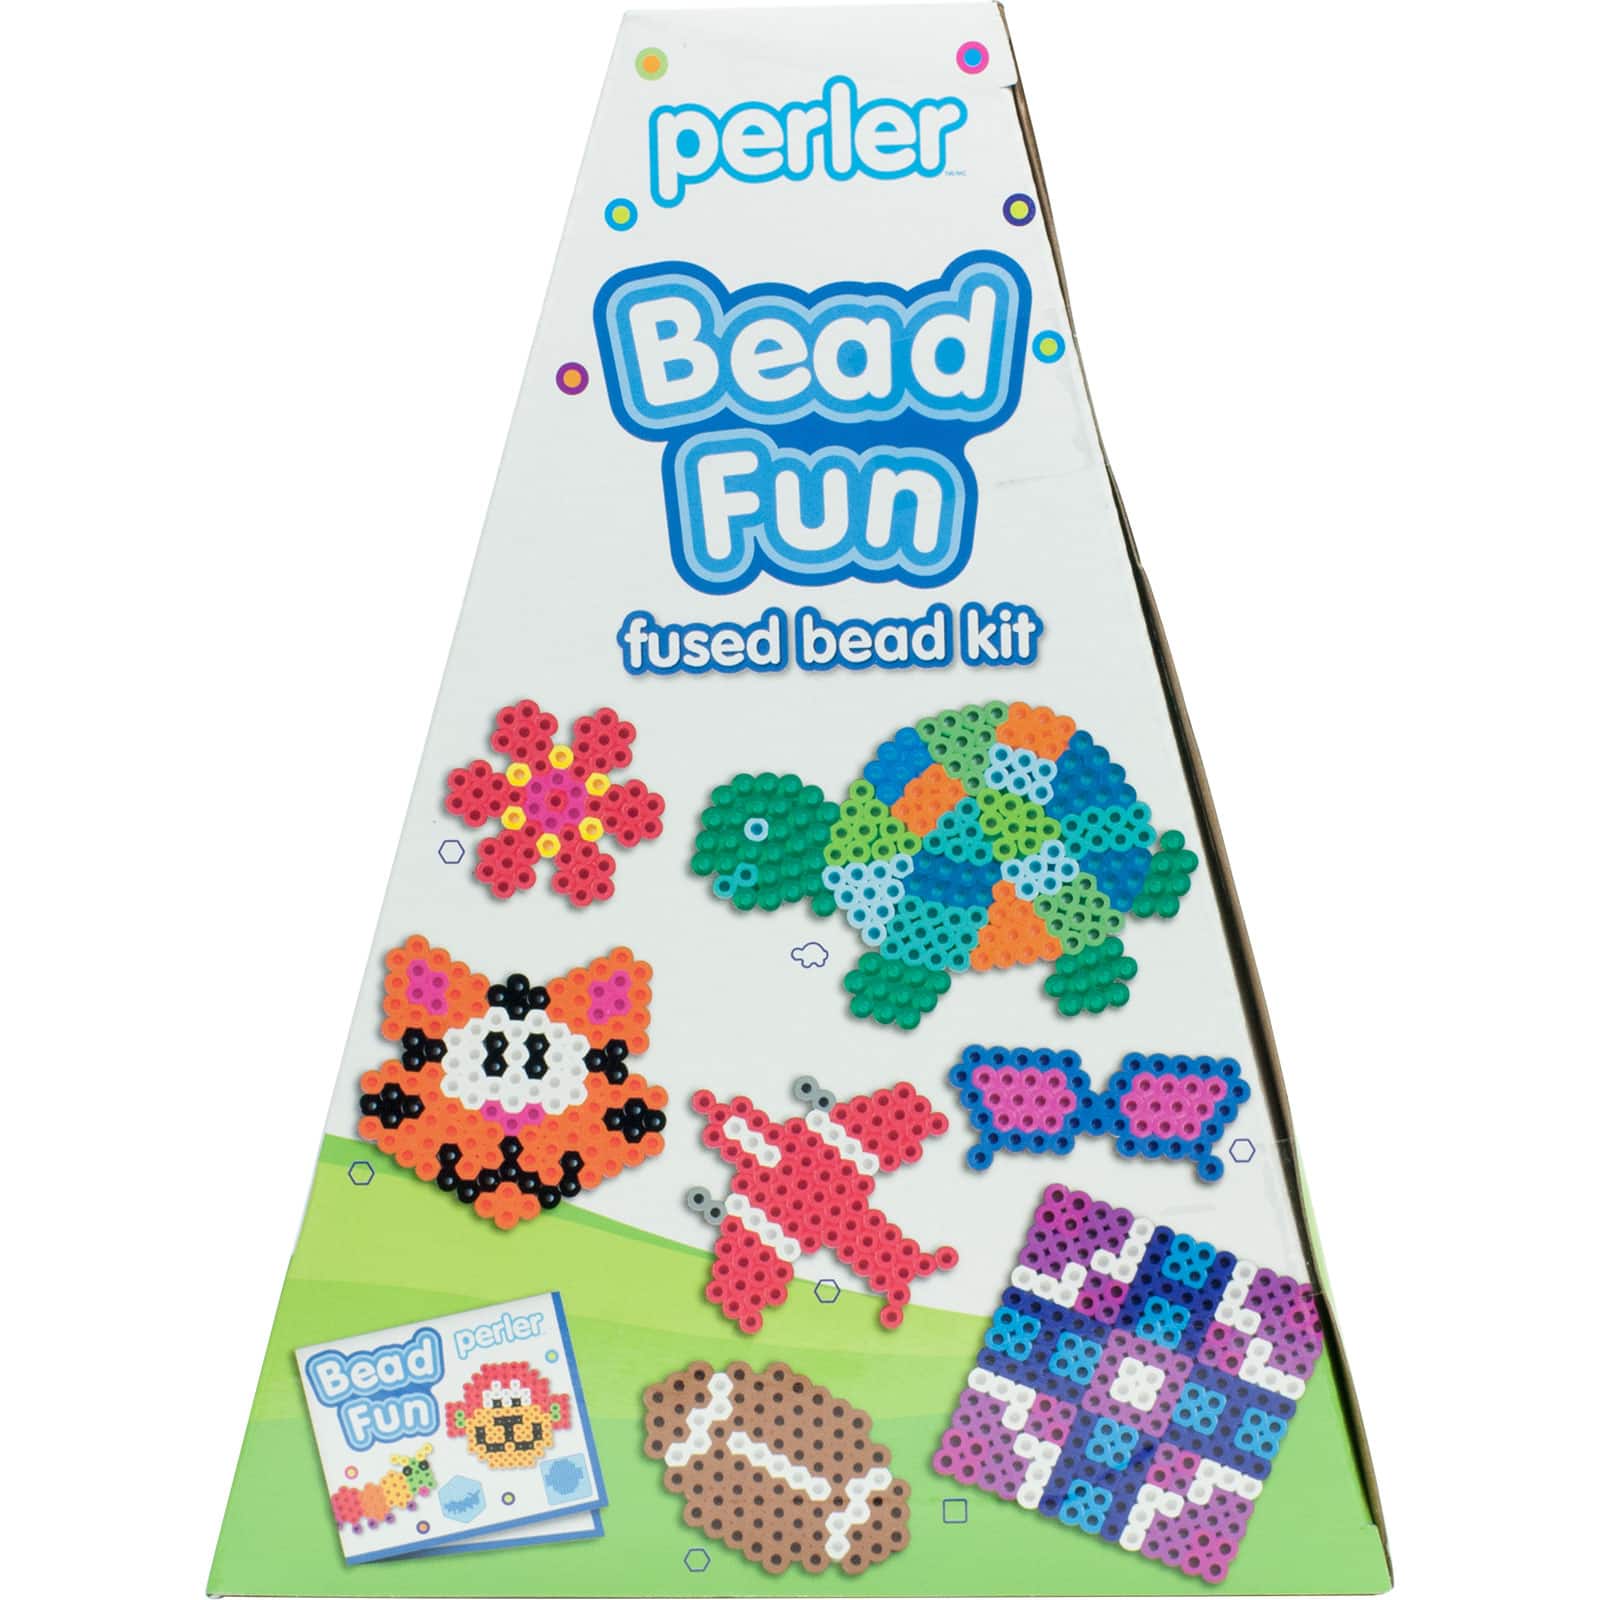 Perler Bead Fun Fused Bead Kit, BLICK Art Materials